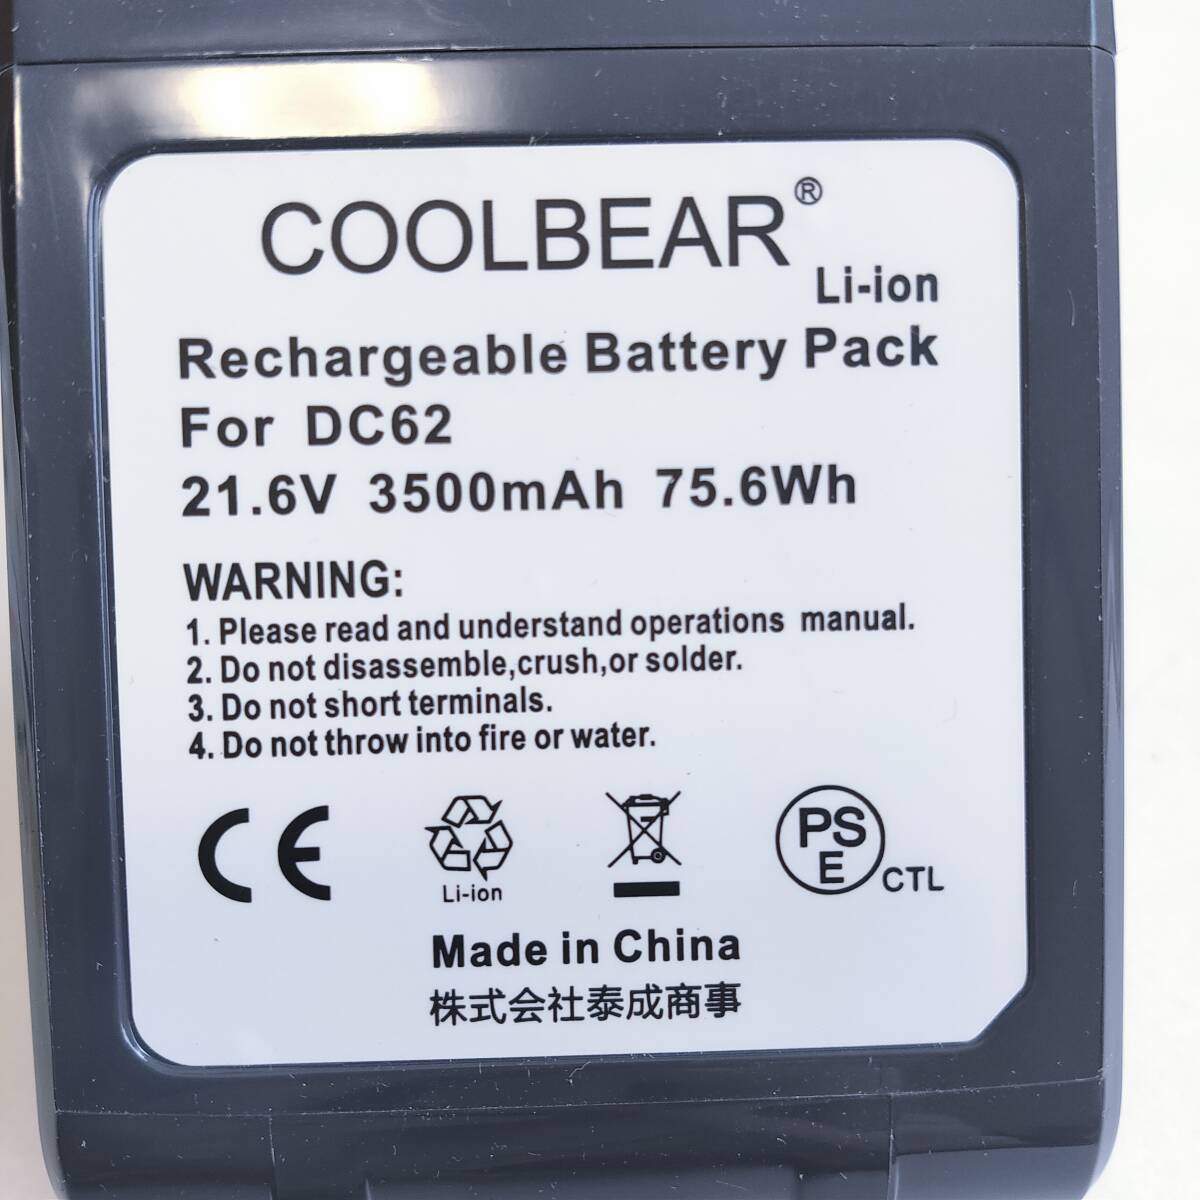 「一円スタート」COOLBEAR 掃除機用 交換バッテリー For DC62 21.6V 3500mAh 75.6Wh「1円」AKI01_2387の画像3